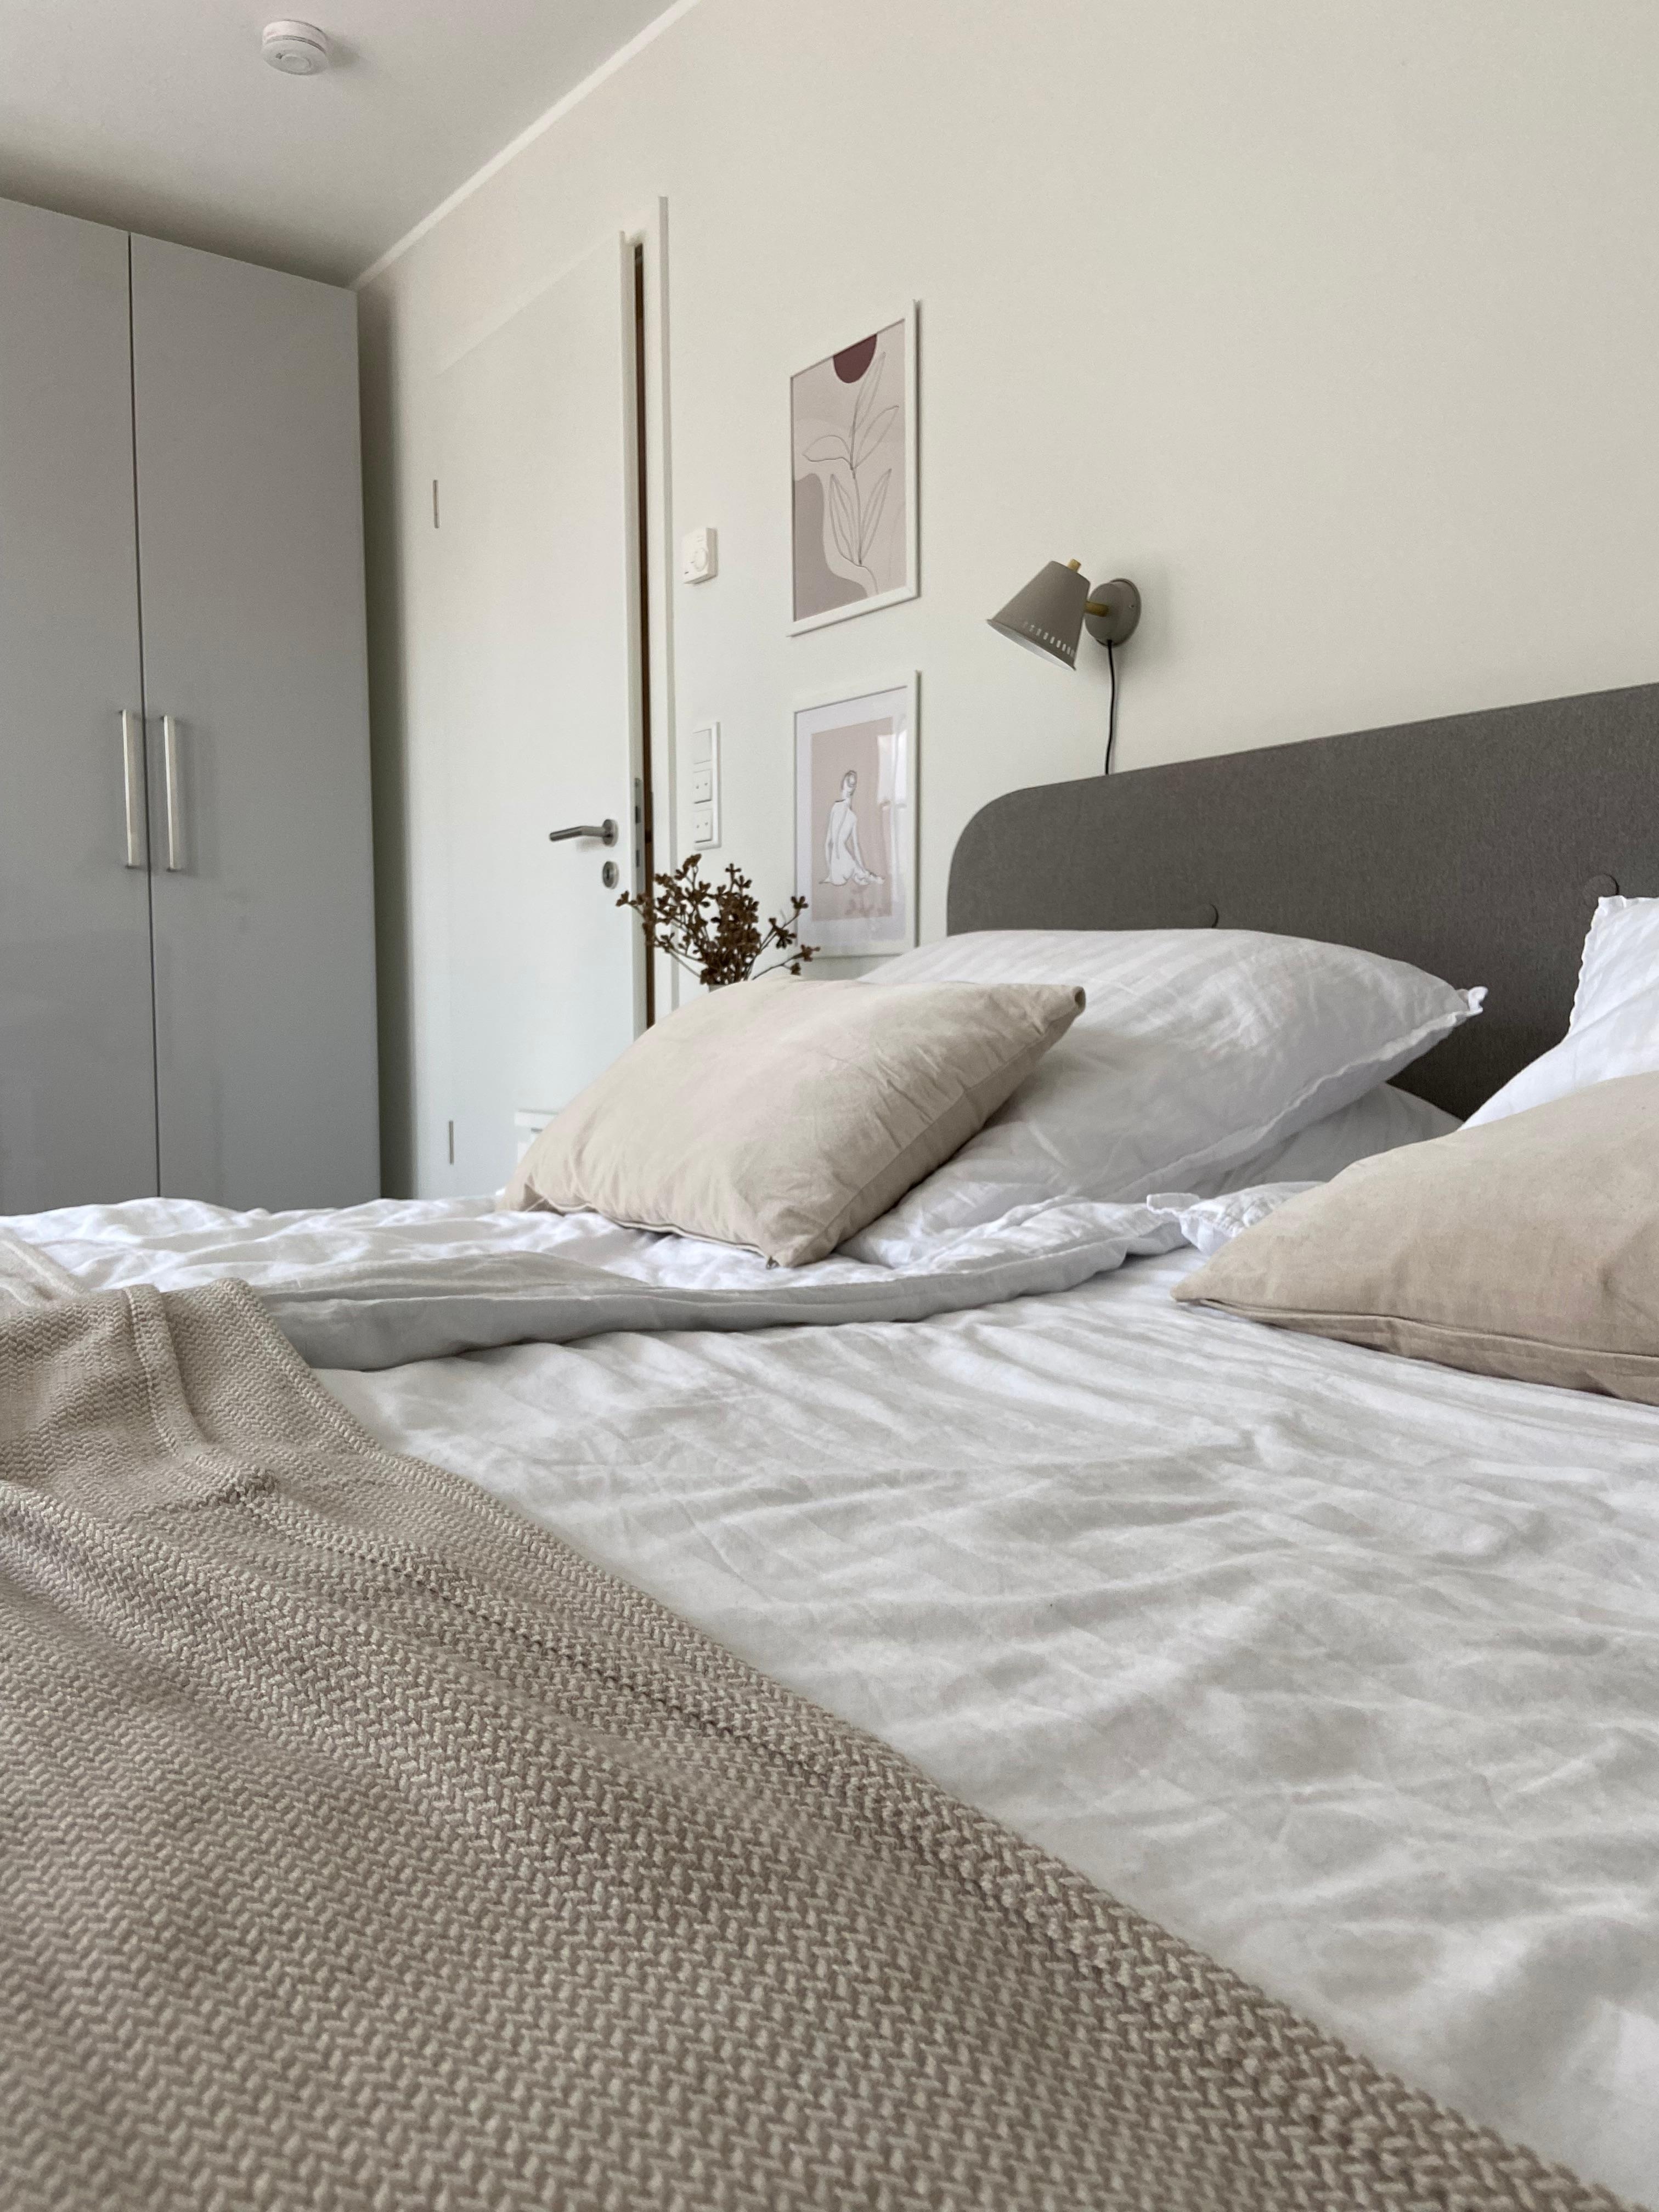 #schlafzimmer #minimalismus #funktional #grau #beige #jysk #ikea #hmhome